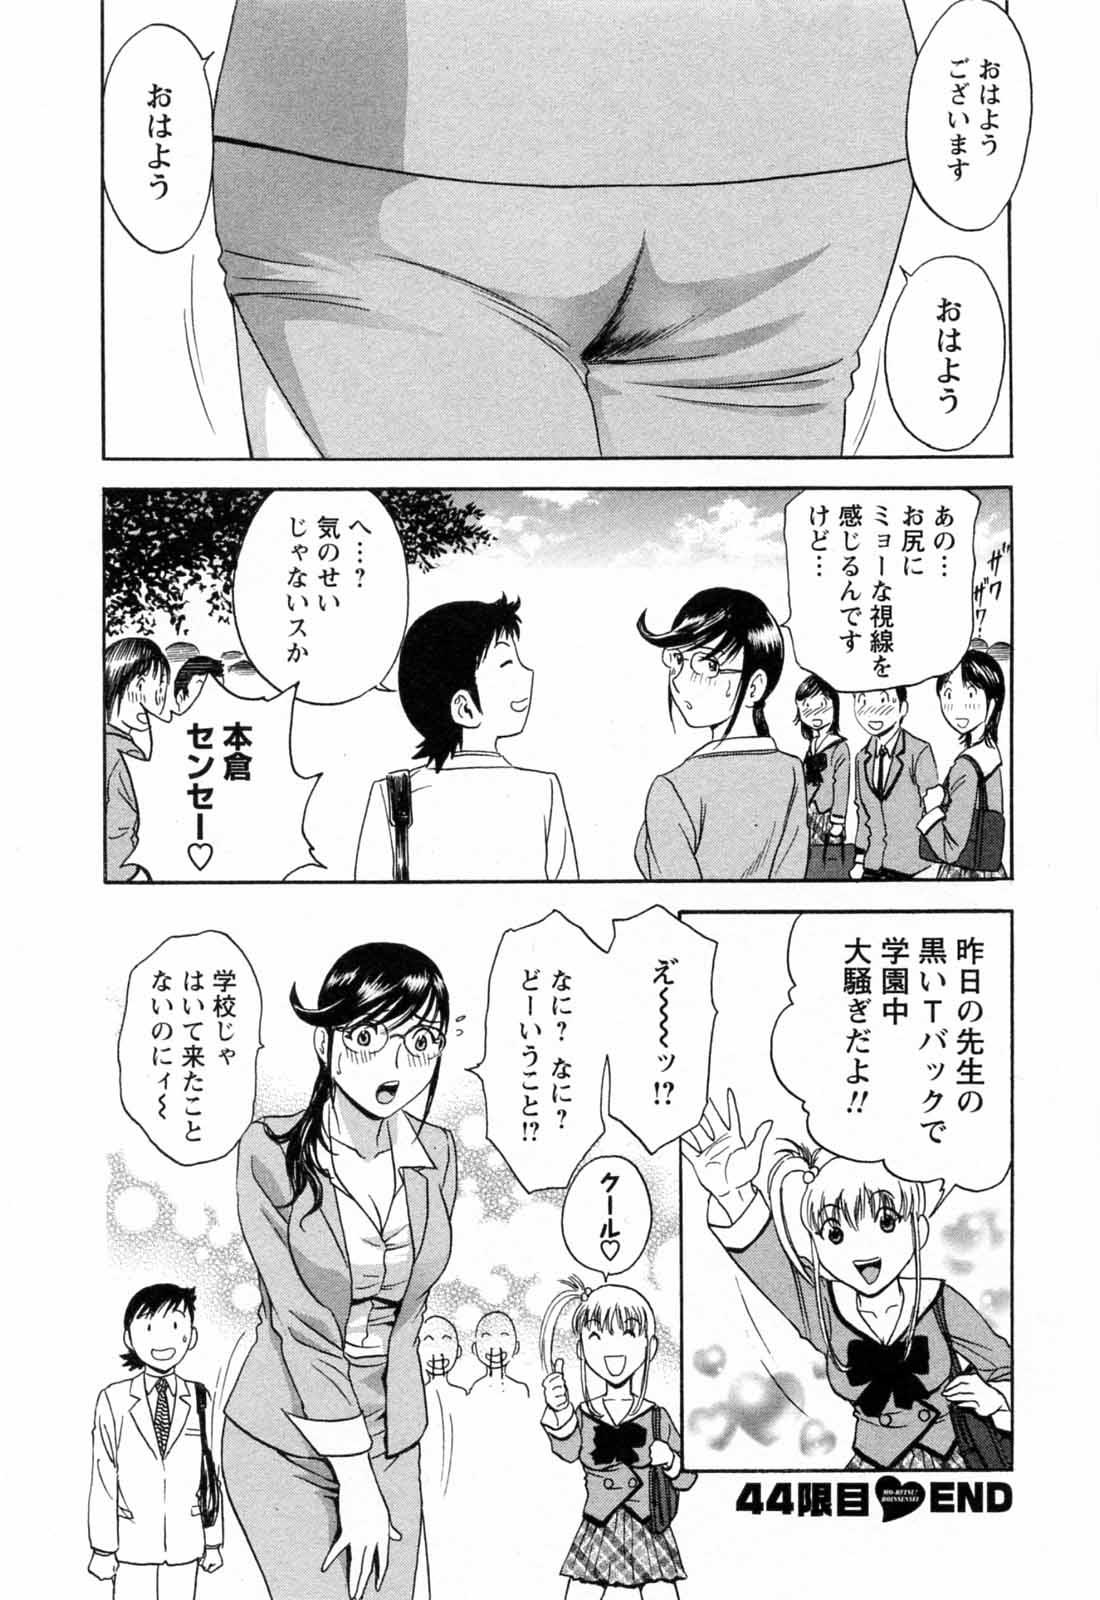 [Hidemaru] Mo-Retsu! Boin Sensei (Boing Boing Teacher) Vol.5 173